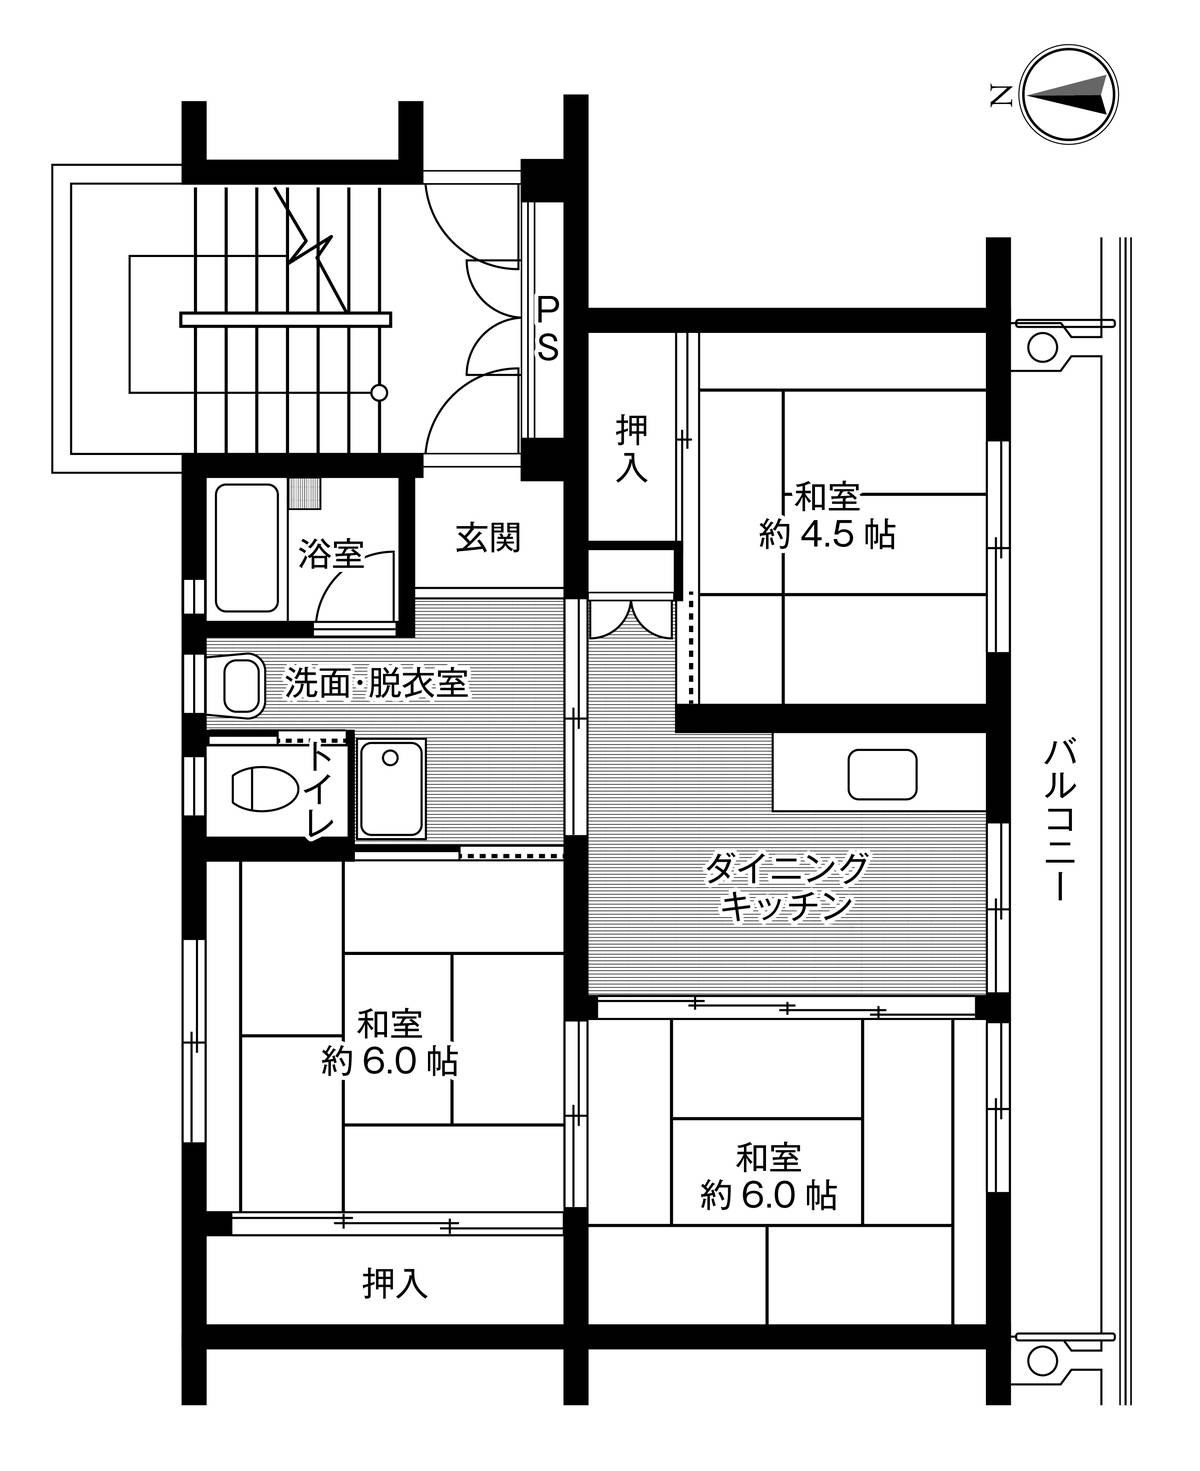 3DK floorplan of Village House Kakunodate in Semboku-shi